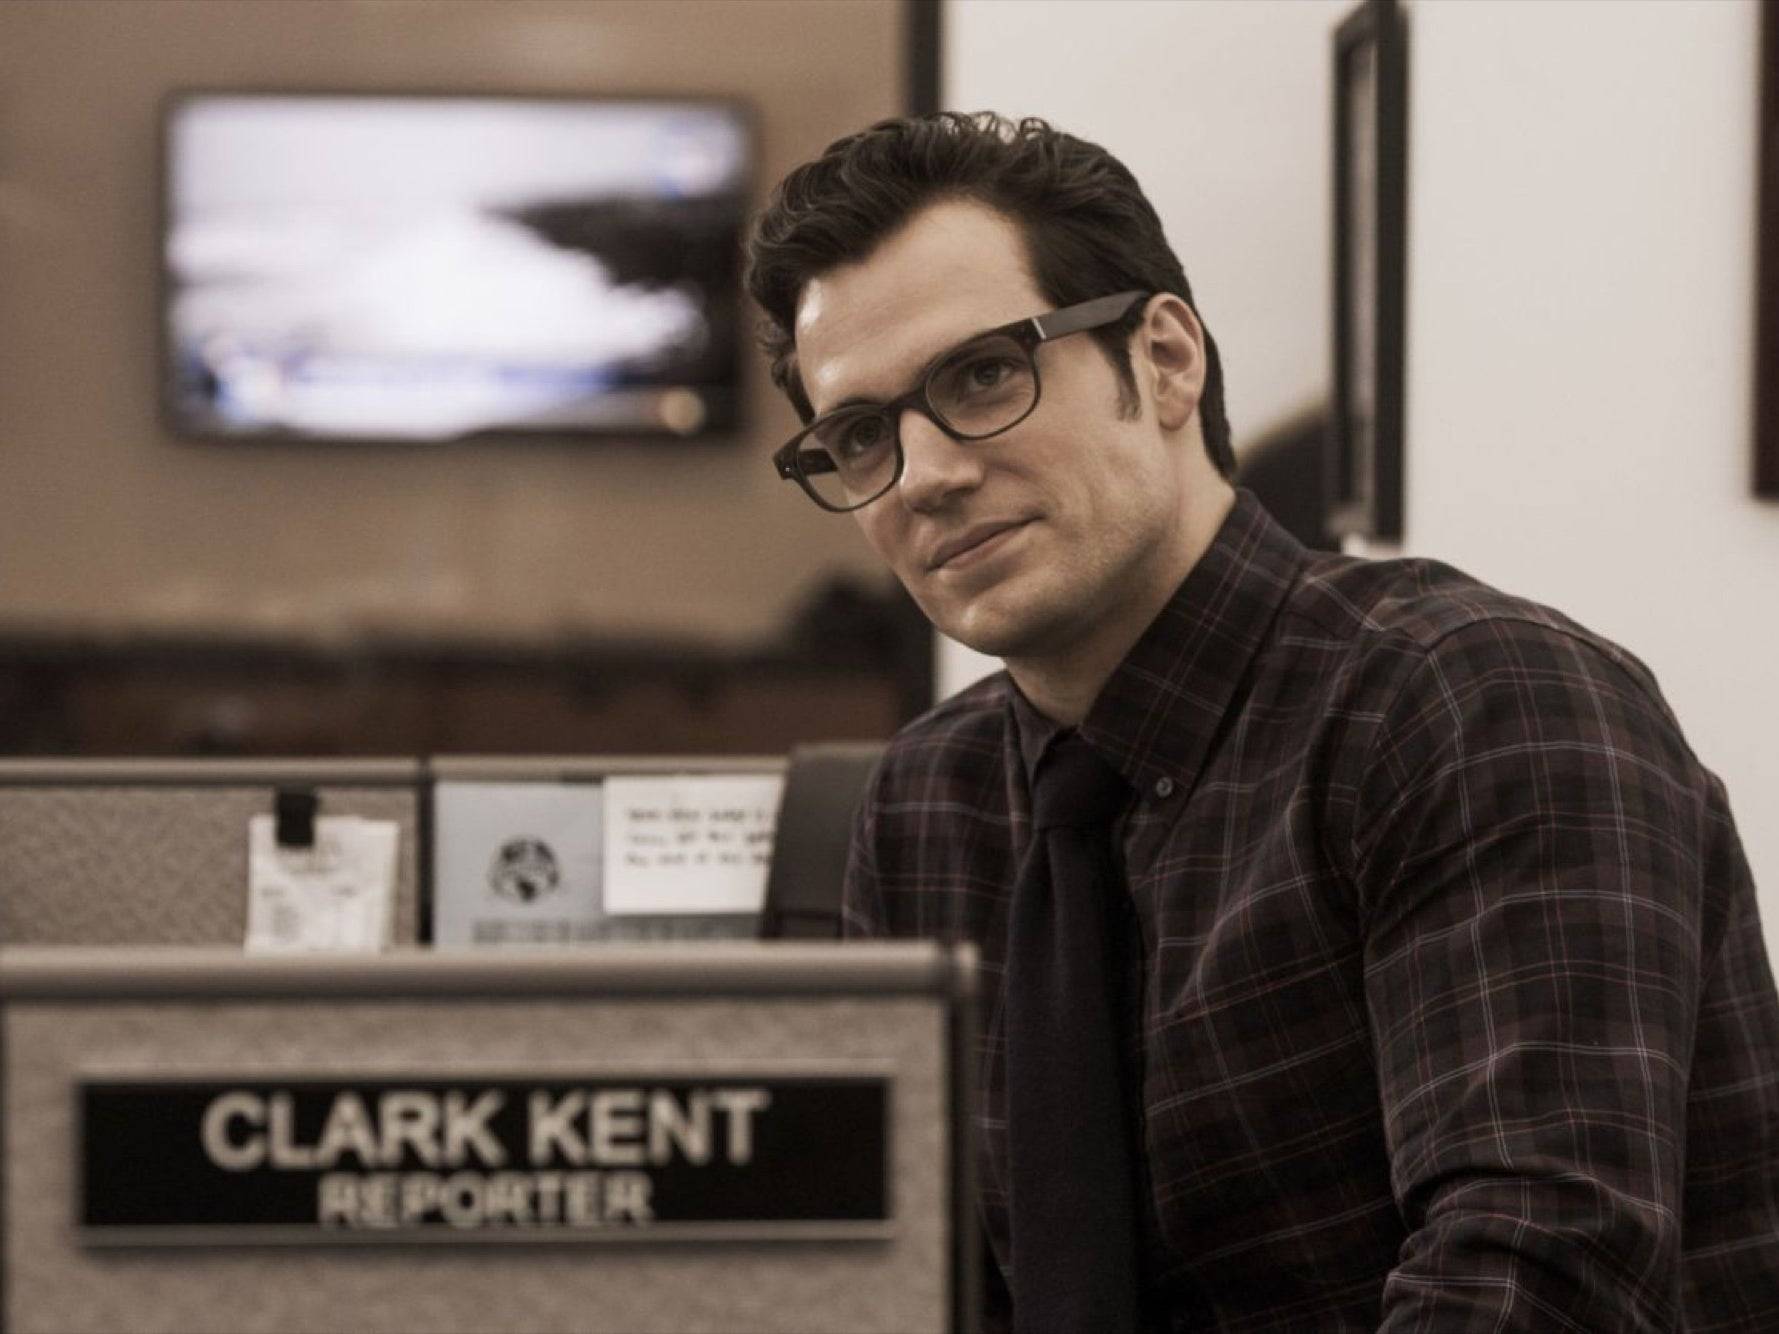 L'acteur Henry Cavill se faisant passer pour Clark Kent, le journaliste, vêtu d'une chemise à motifs, d'une cravate et debout dans son bureau en tant que journaliste.